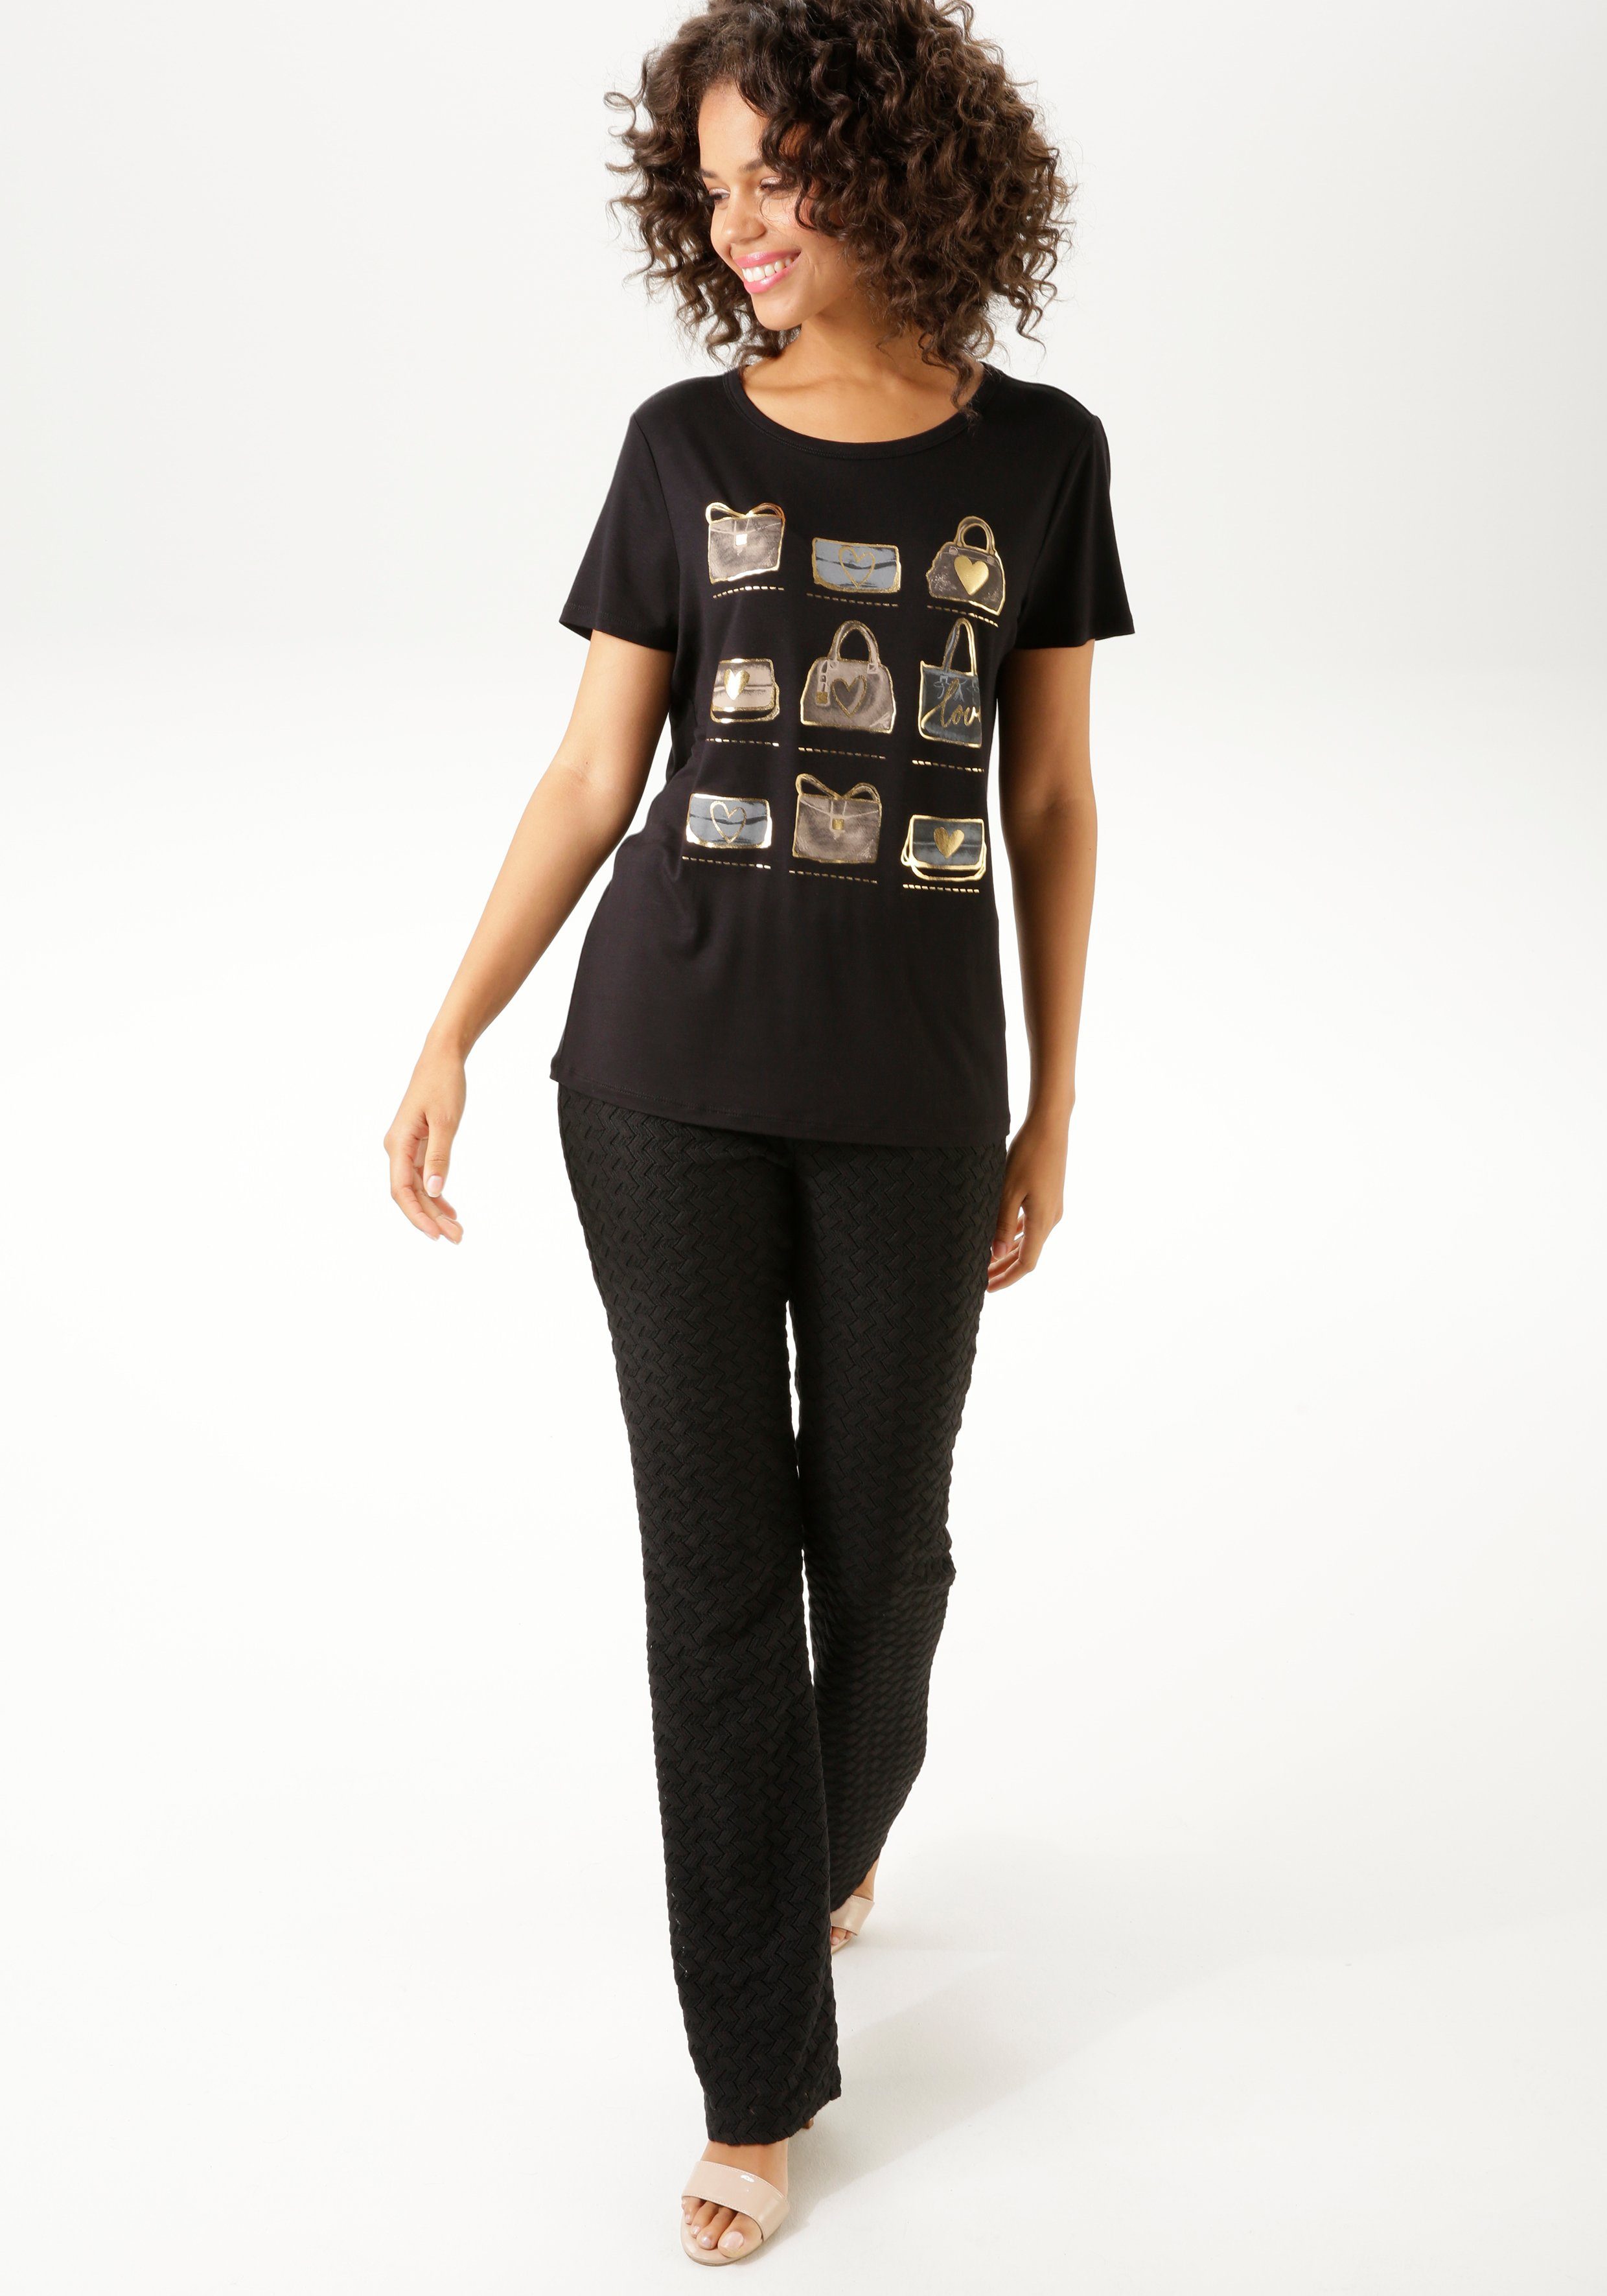 Aniston CASUAL T-shirt Print aan de voorkant deels met glinsterende folieprint NIEUWE COLLECTIE